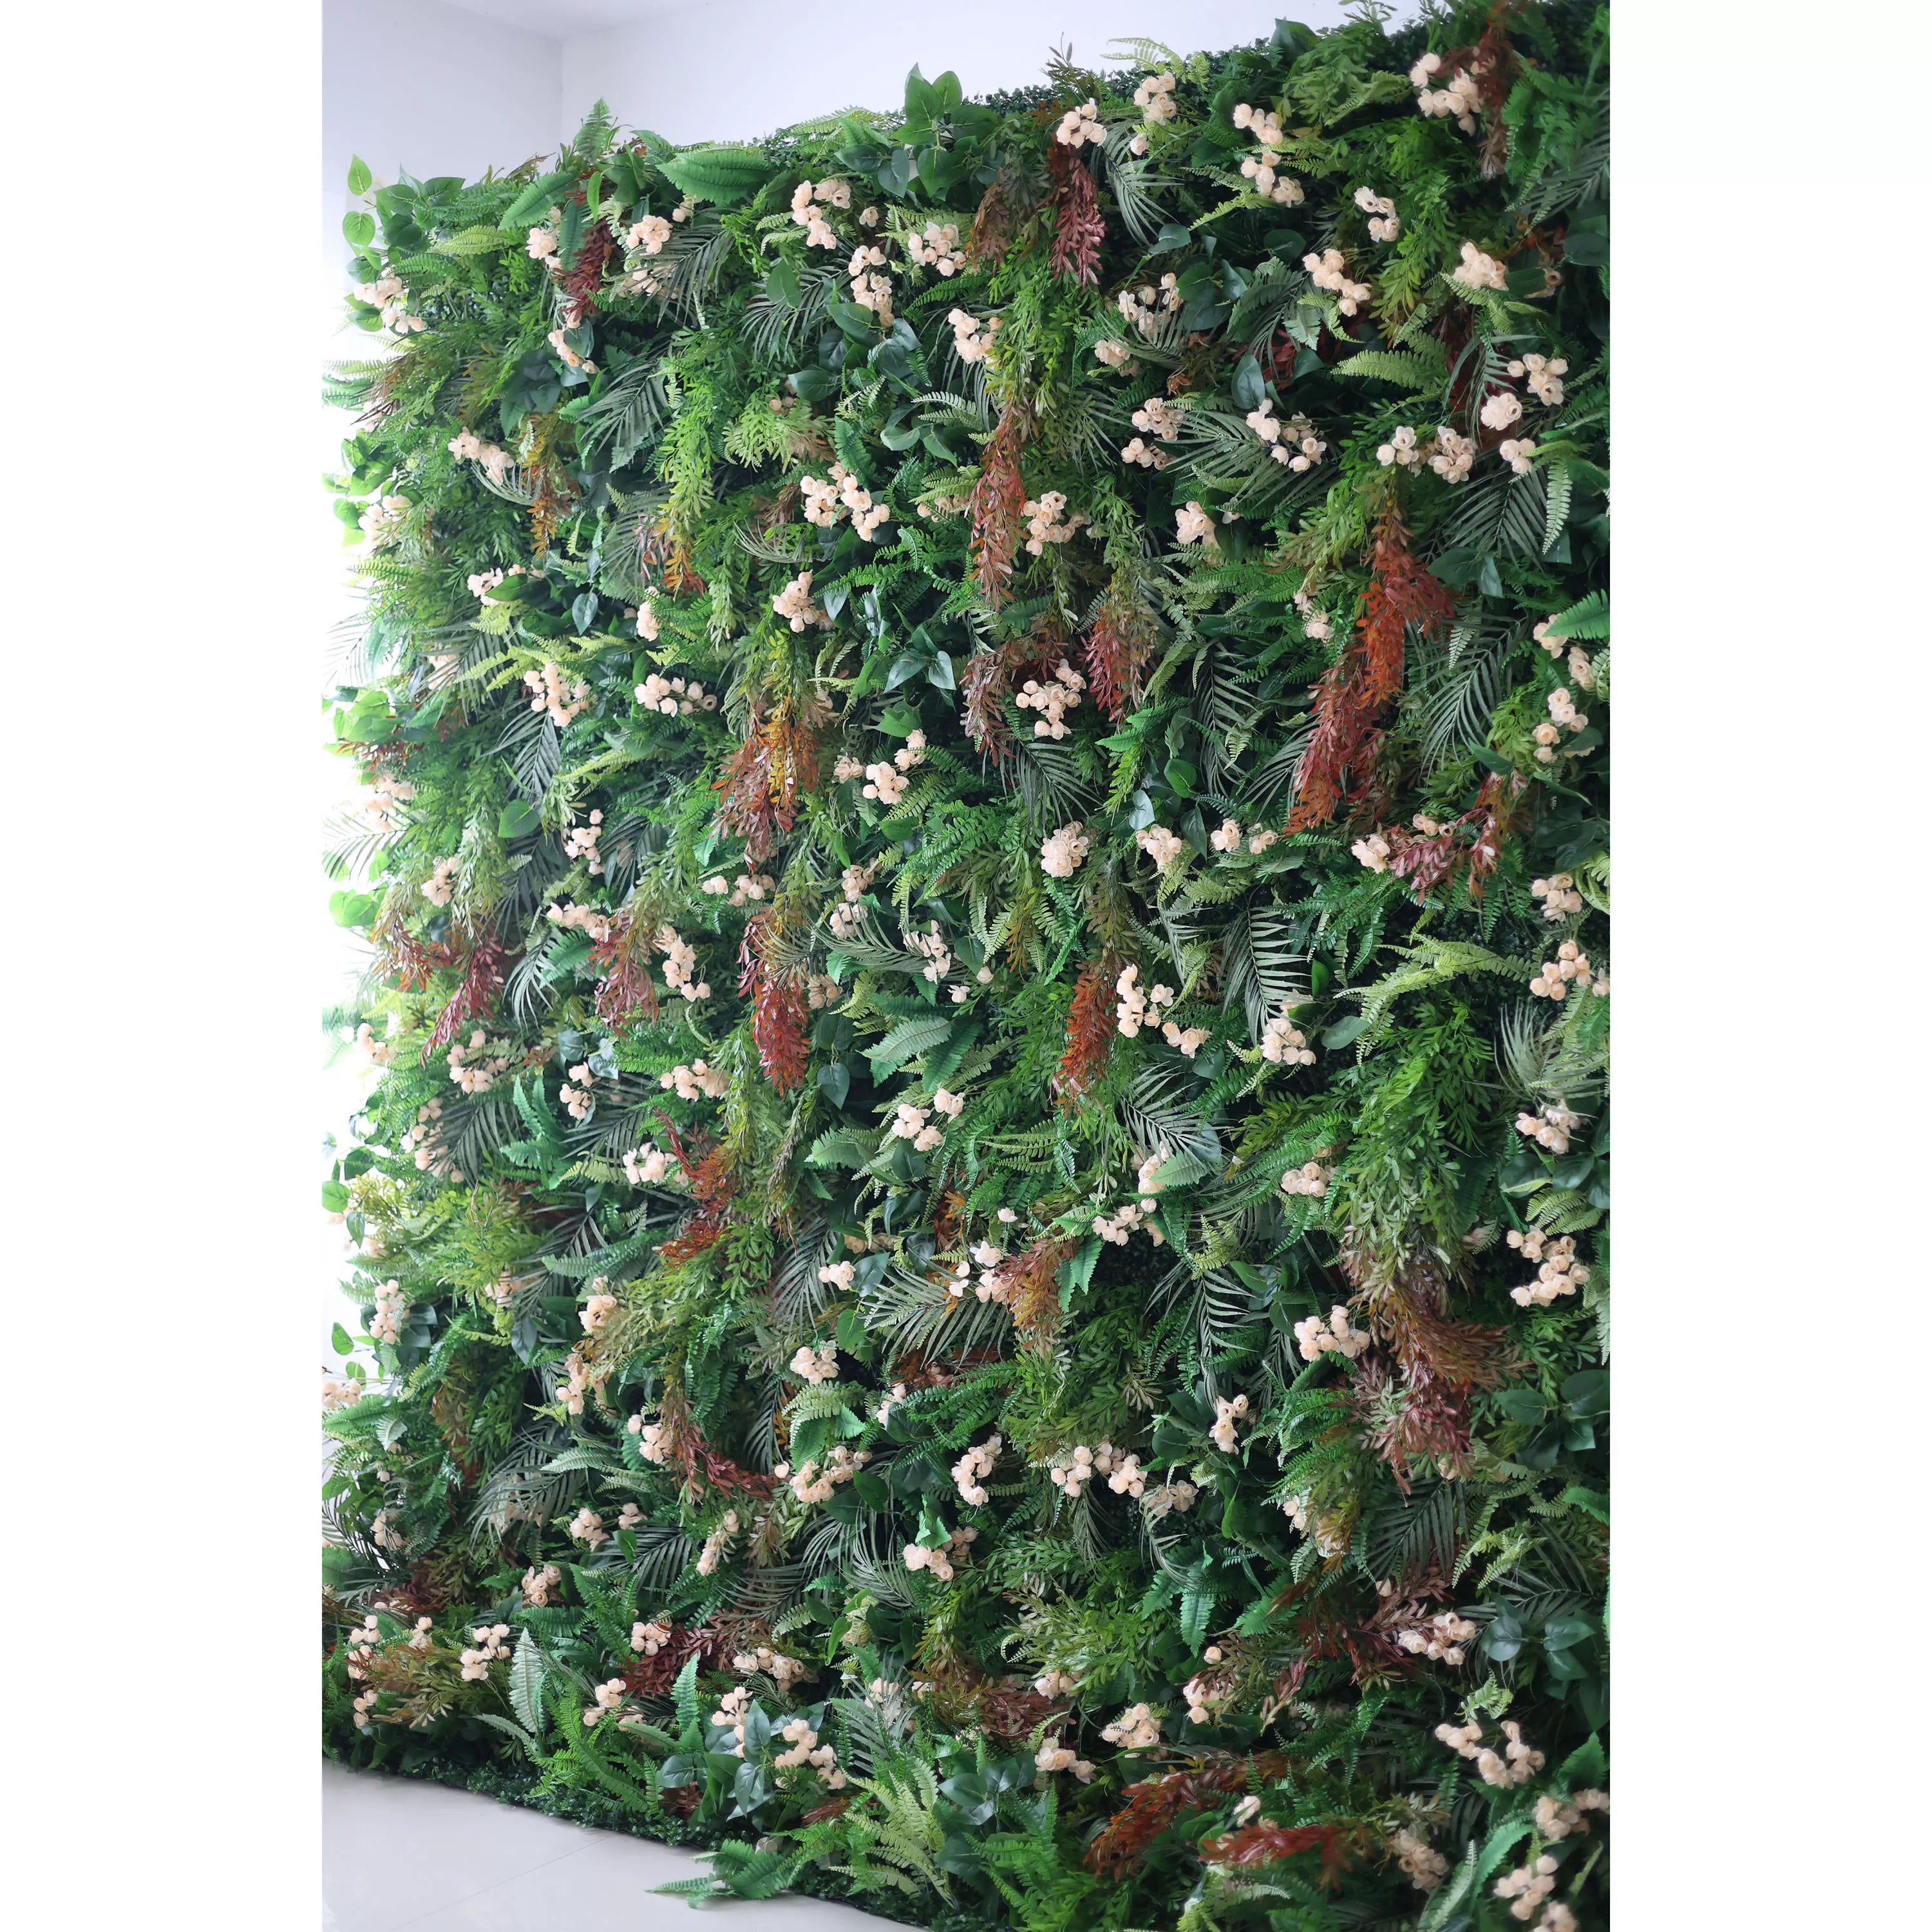 زهور فالار جدار الغابات الاستوائية المورقة مع أزهار عاجية حساسة: الغوص في احتضان الطبيعة-الانصهار المثالي للخضرة والزهور